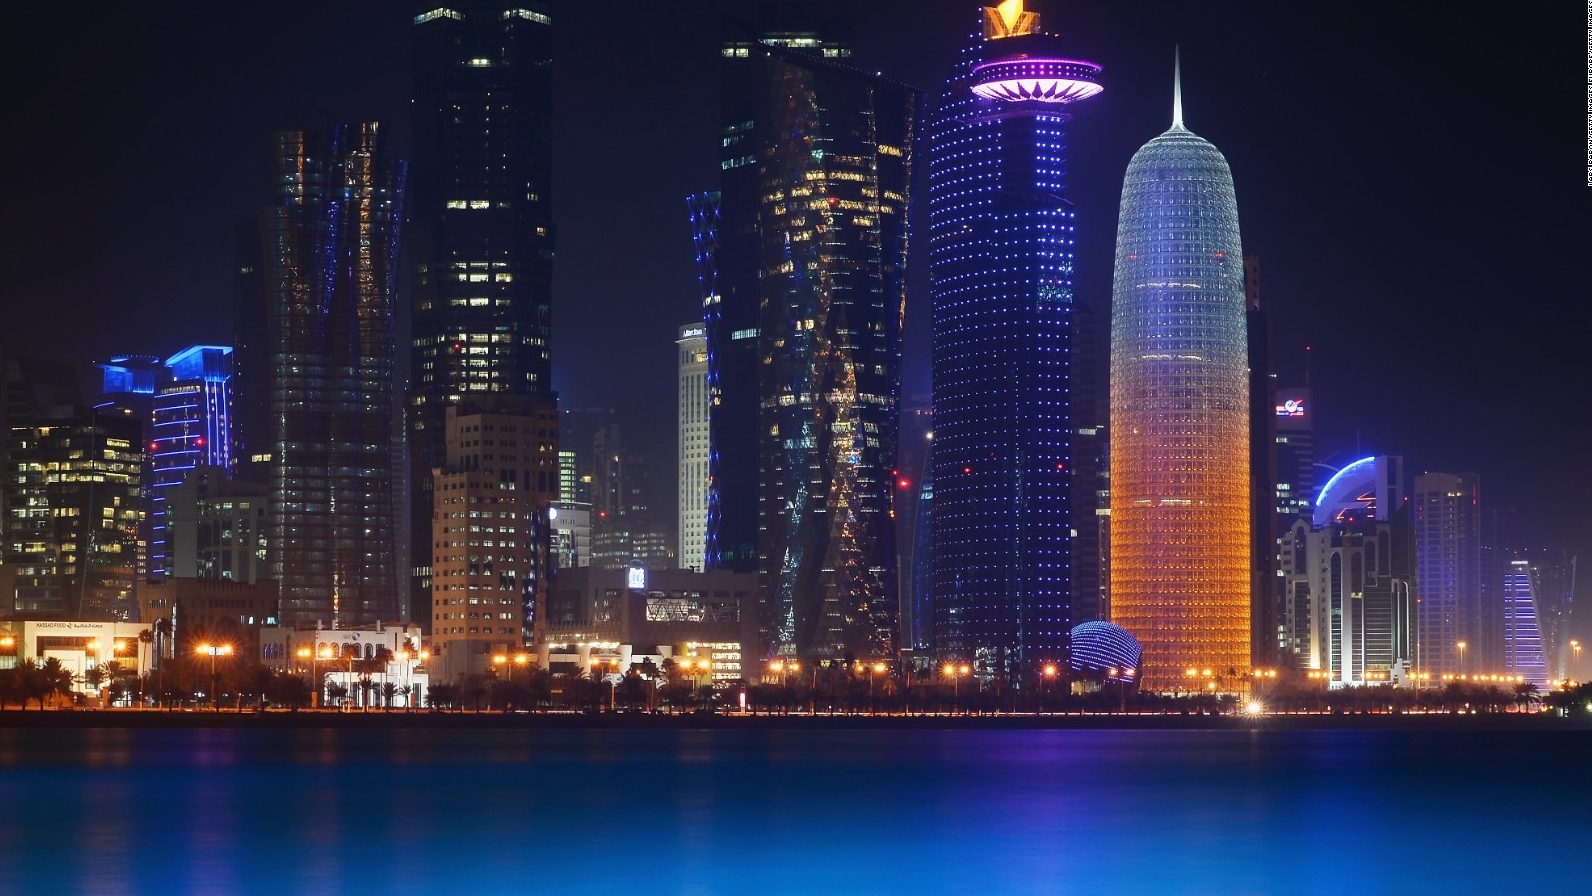 Qatarul își poate apăra economia și moneda națională